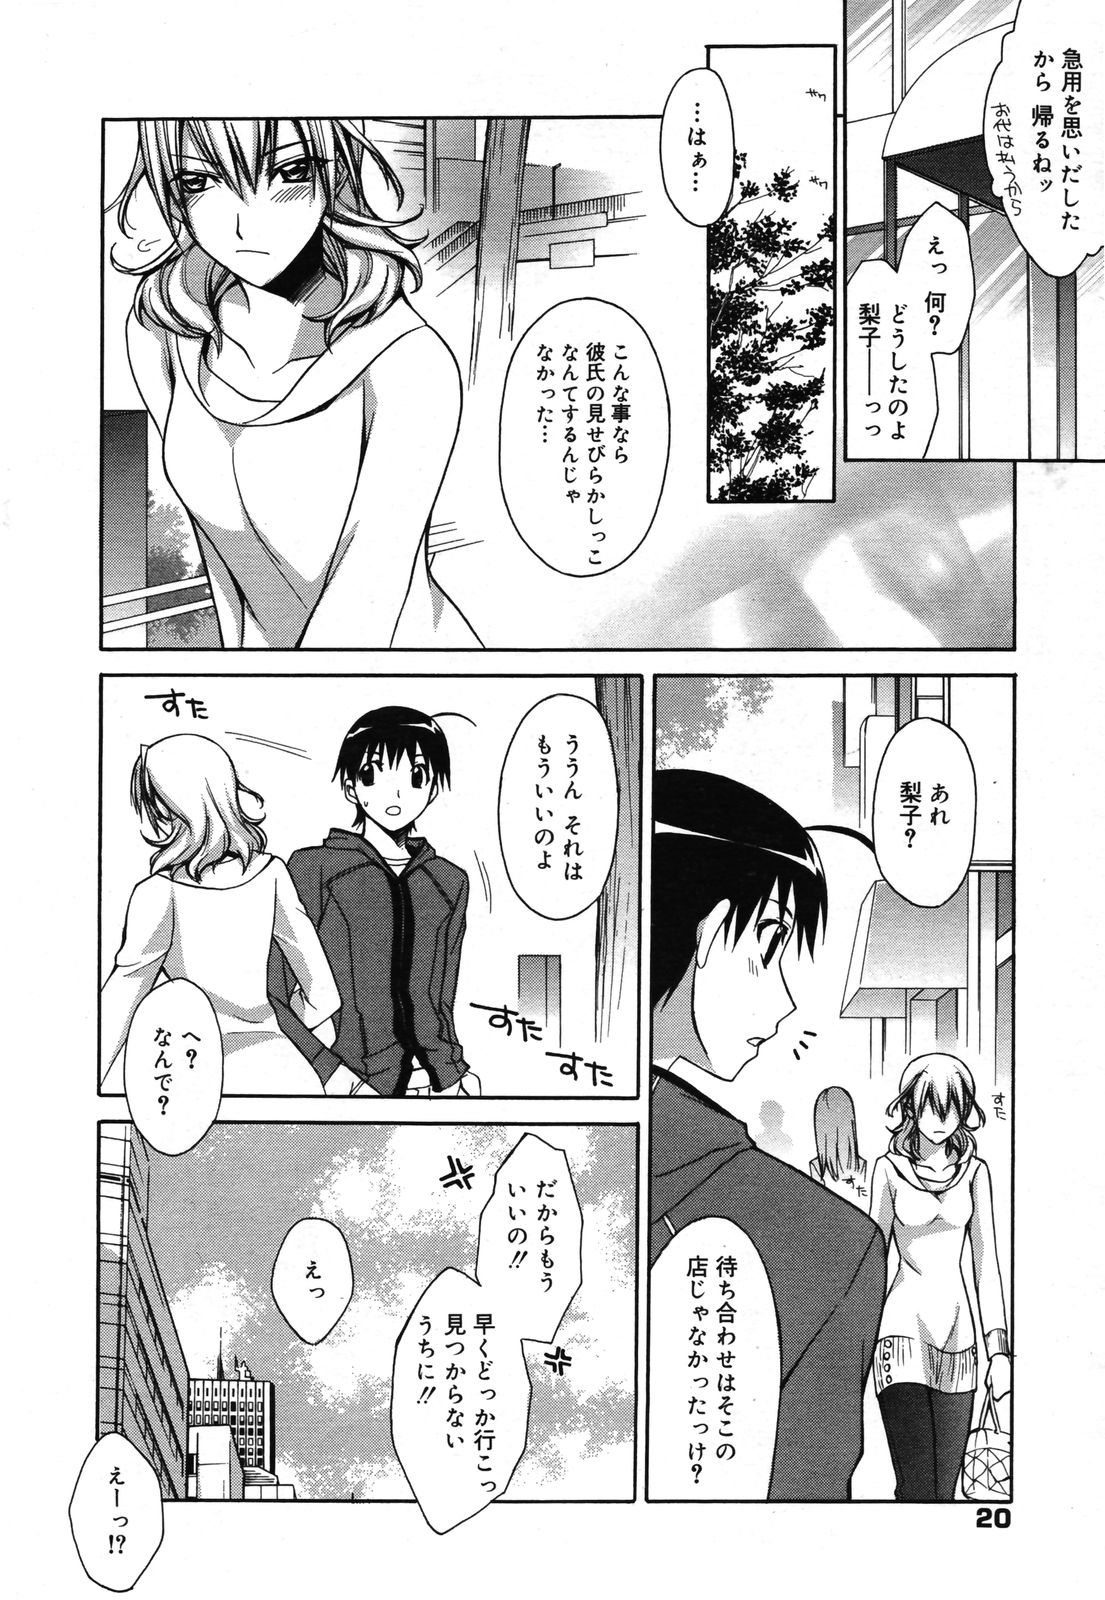 Manga Bangaichi 2007-05 page 19 full